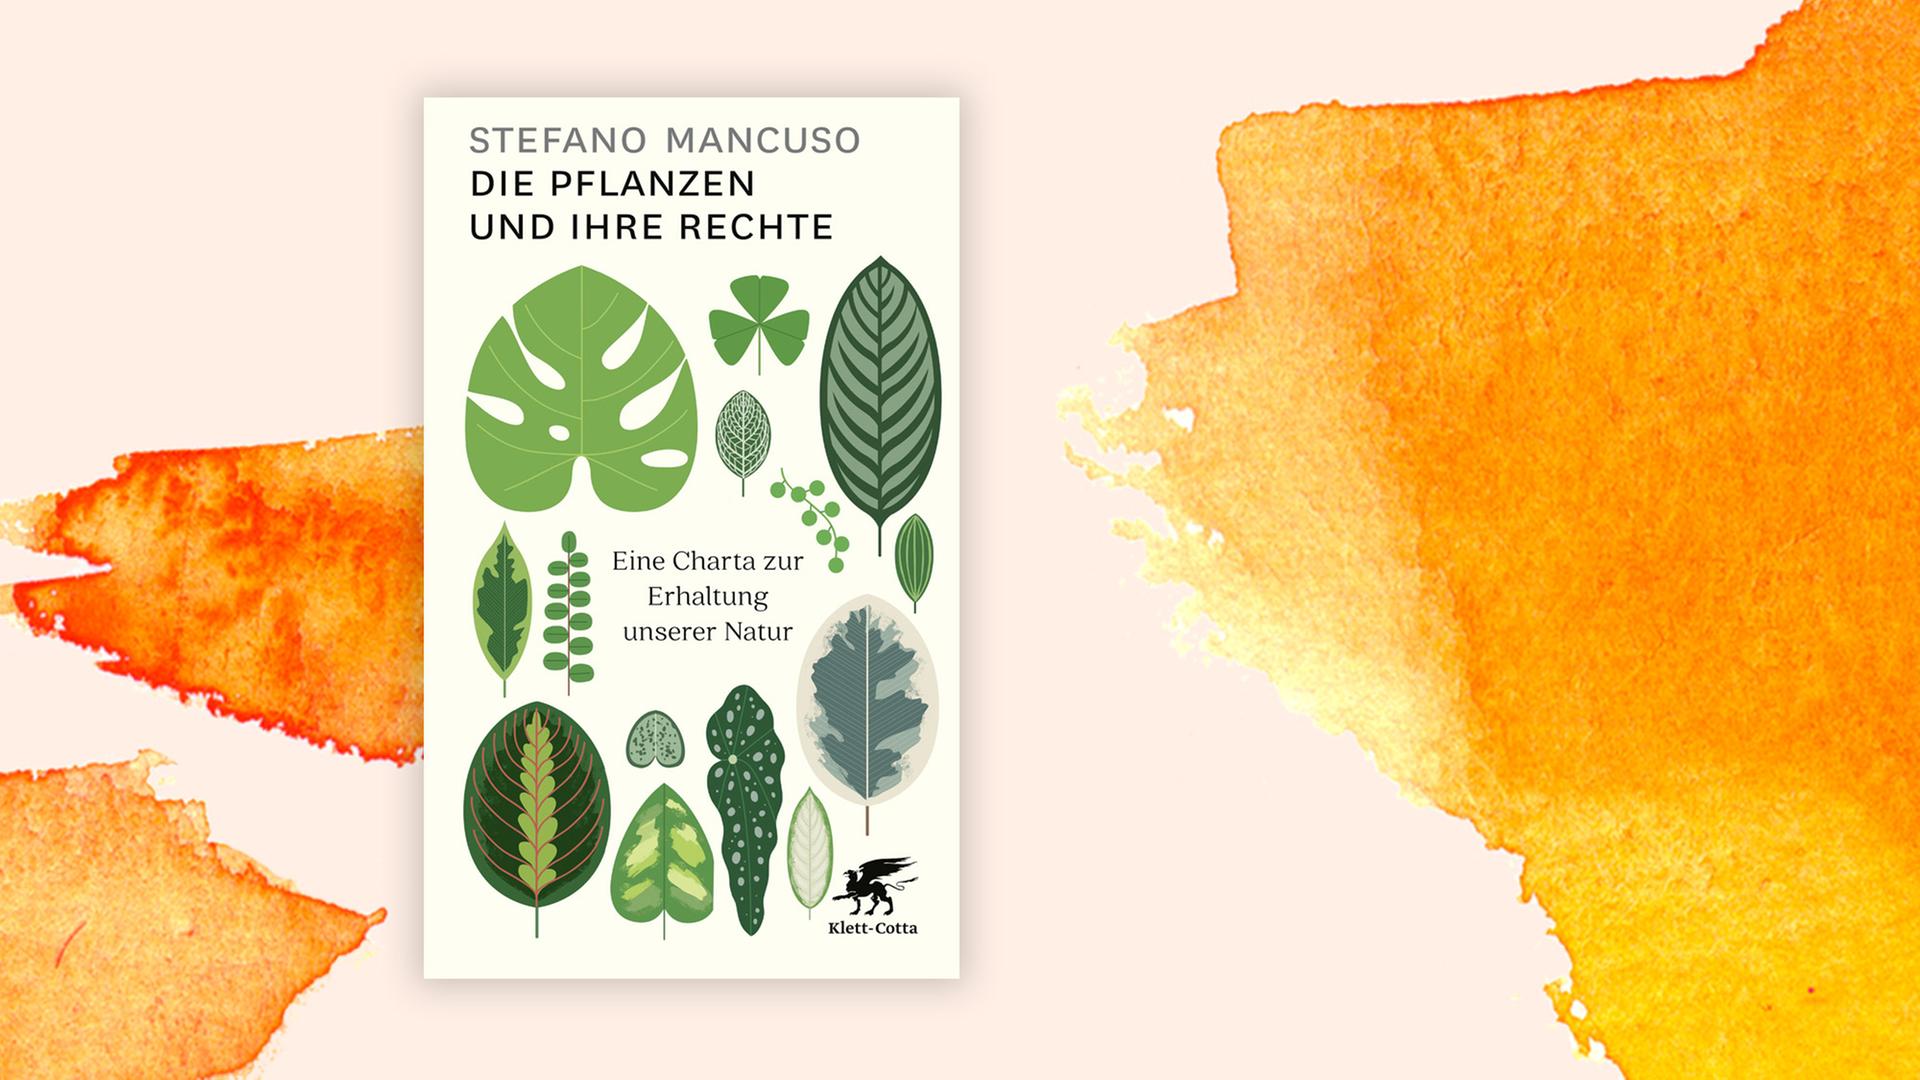 Cover von Stefano Mancuso "Die Pflanzen und ihre Rechte" vor orangenem Aquarell-Hintergrund